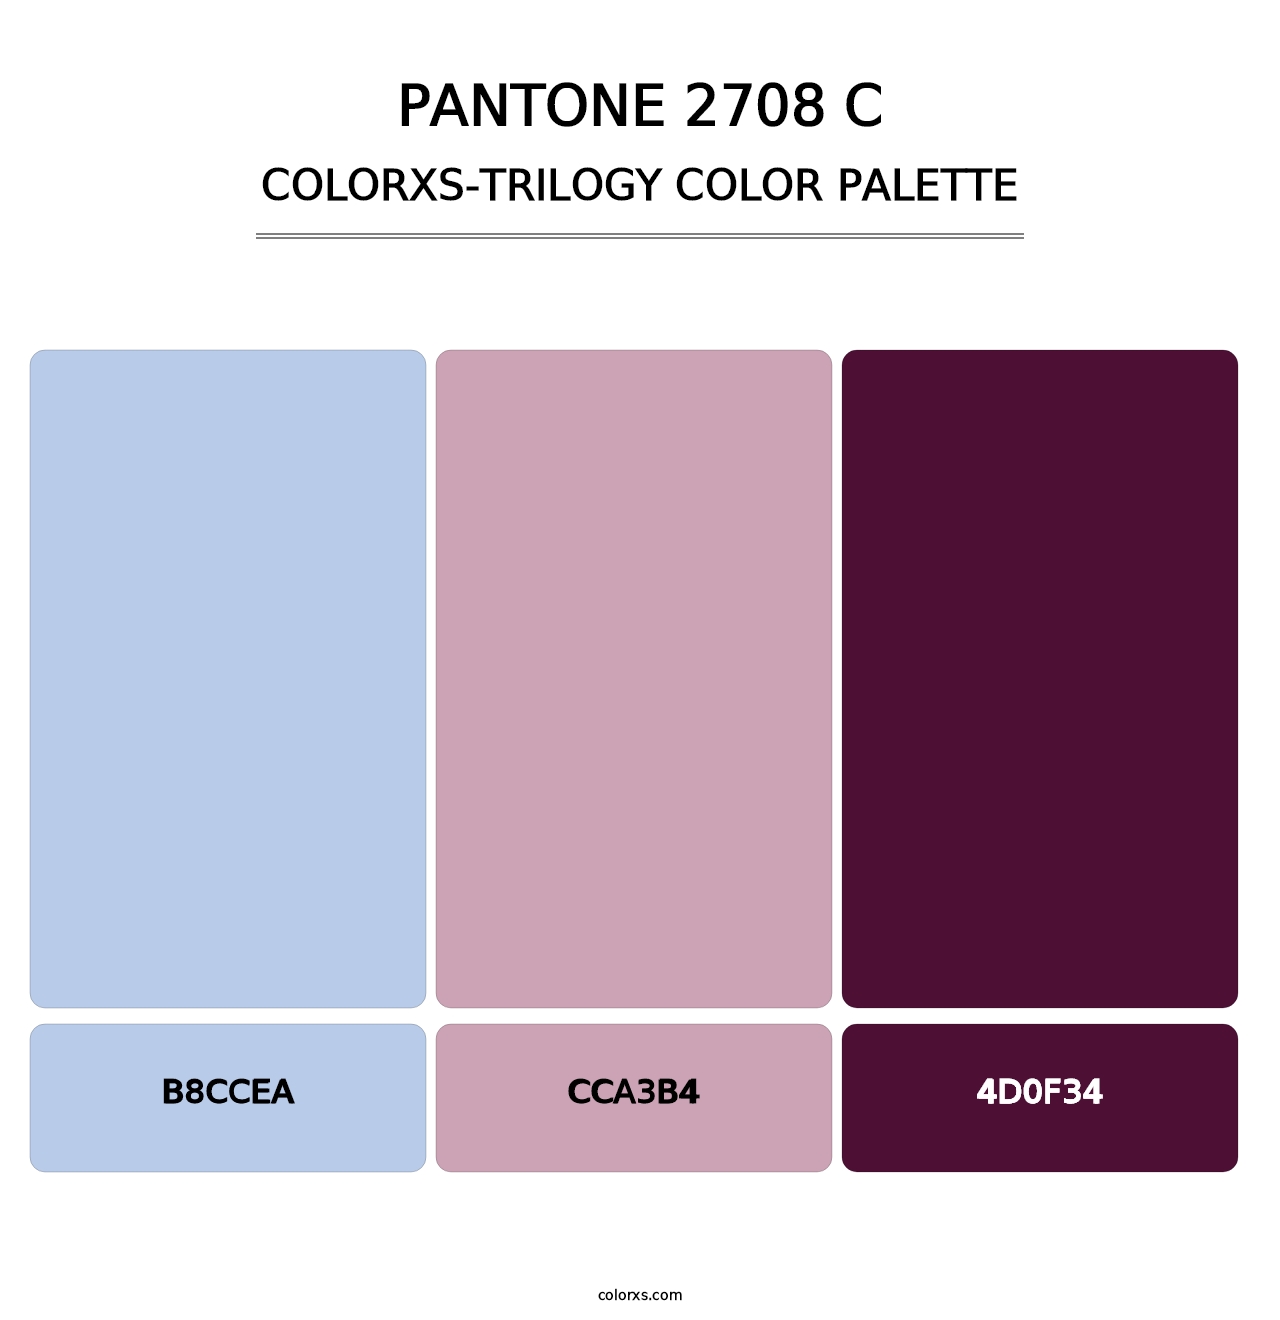 PANTONE 2708 C - Colorxs Trilogy Palette